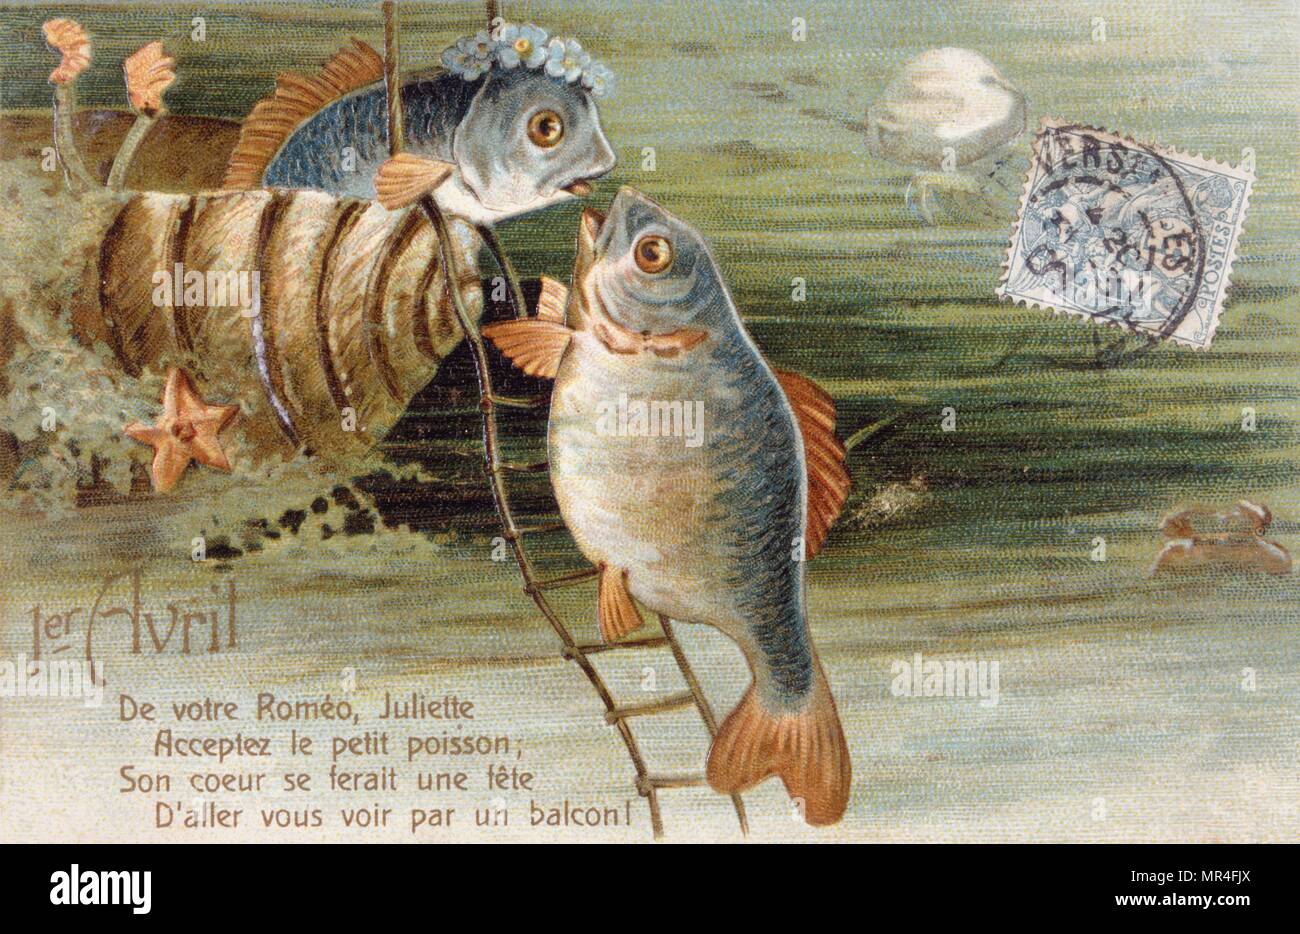 Cartolina francese con l'immagine di due pesci Foto Stock